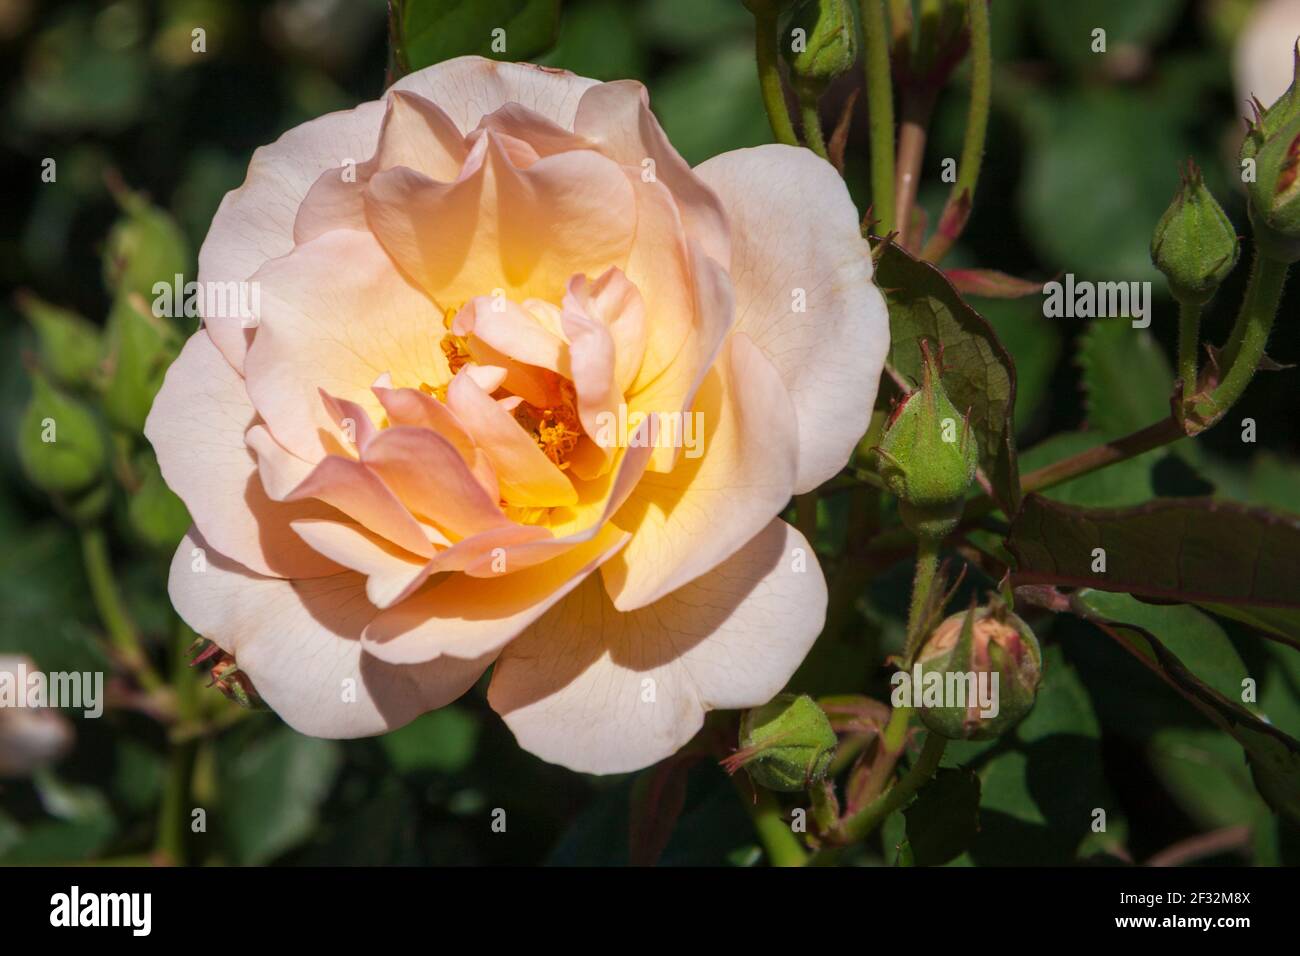 Antique Rose in Rose Emporium Gardens near Brenham, Texas. Stock Photo